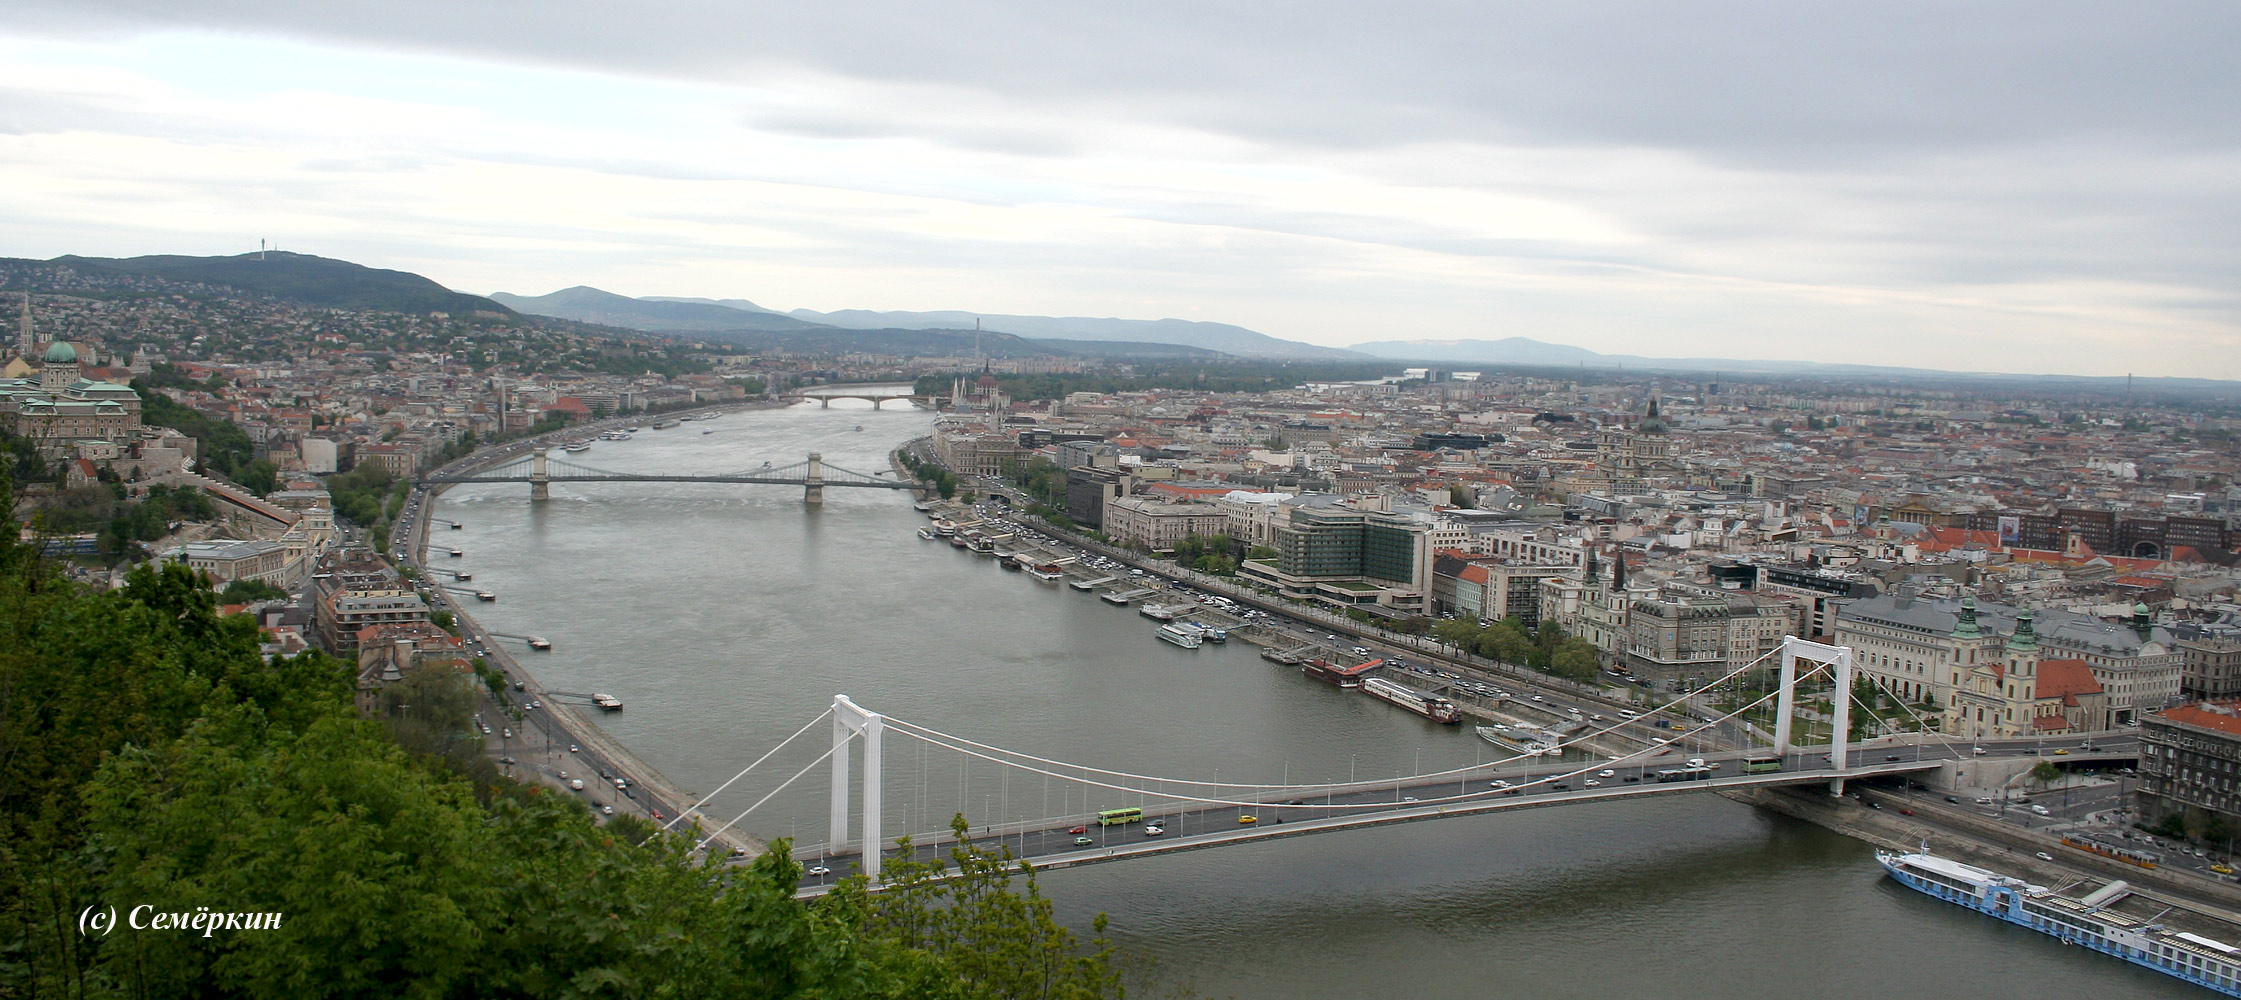 Будапешт, панорама города с цитадели